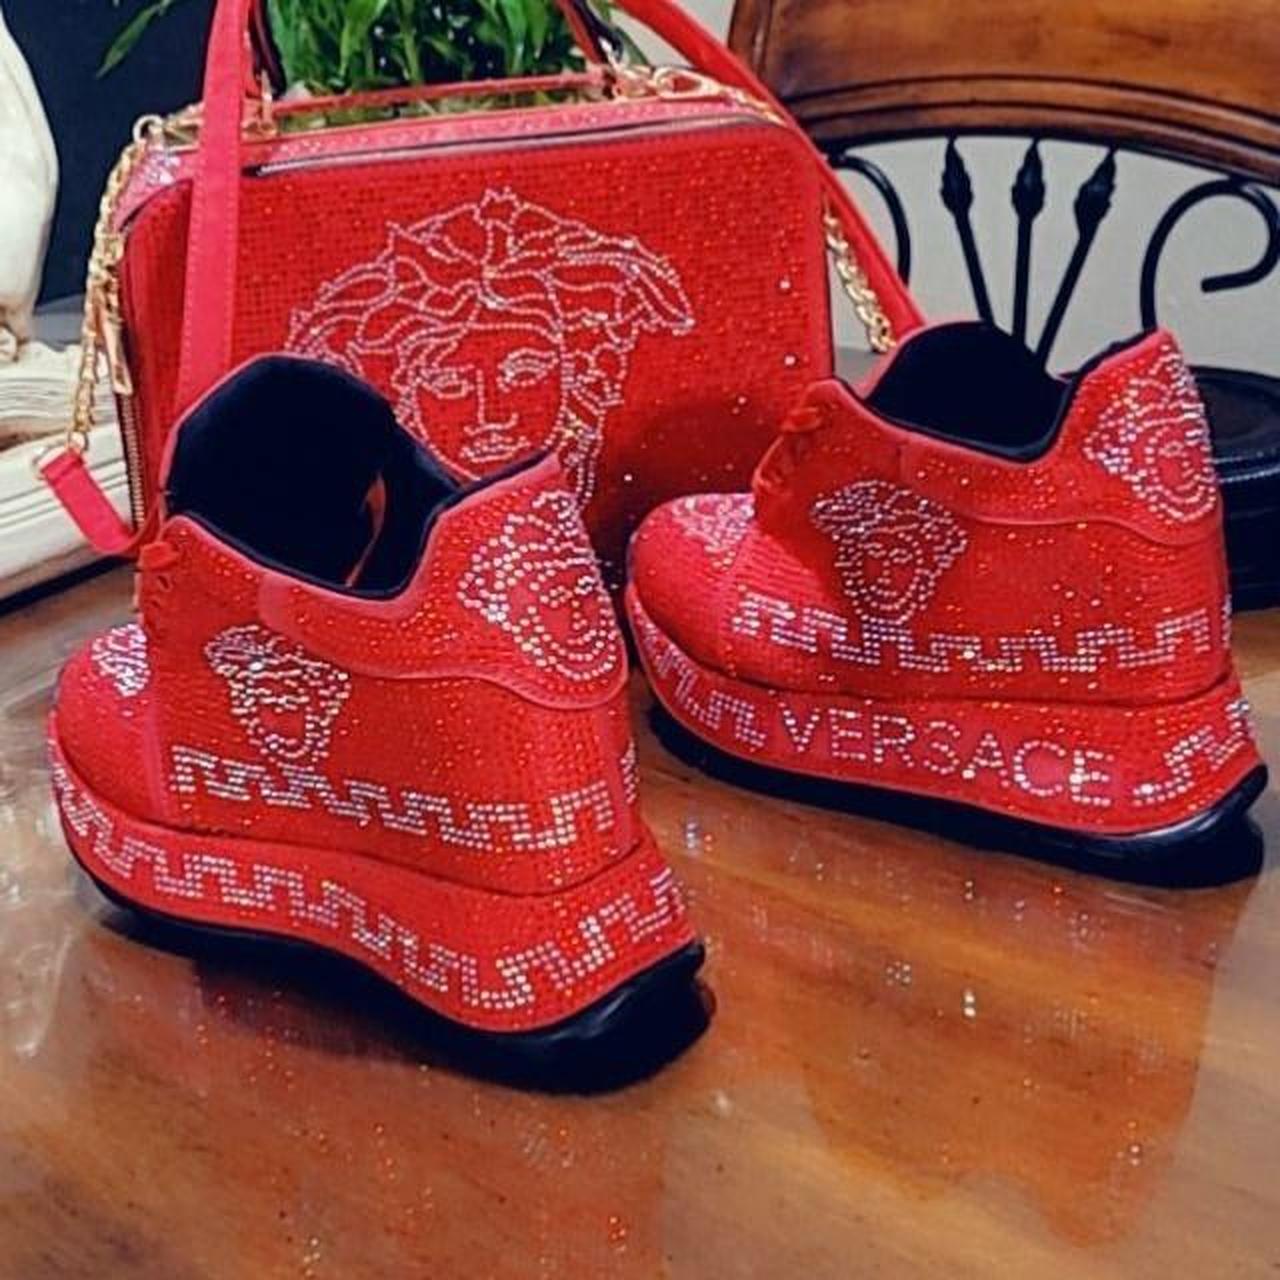 women's versace shoes with her handbag. new,... - Depop